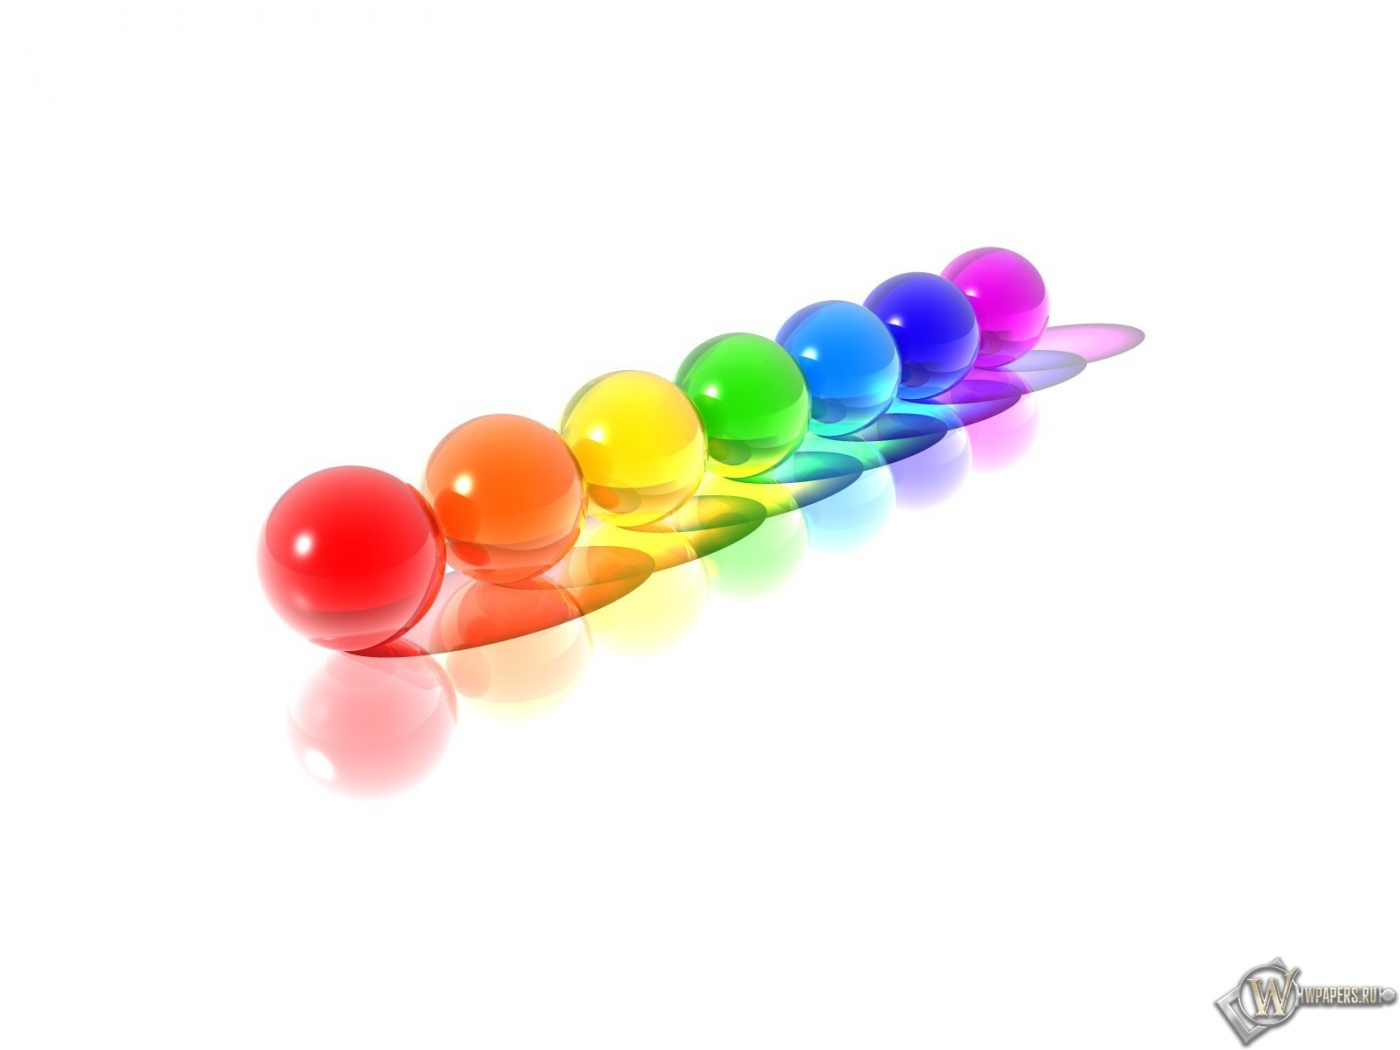 Разноцветные шарики 1400x1050